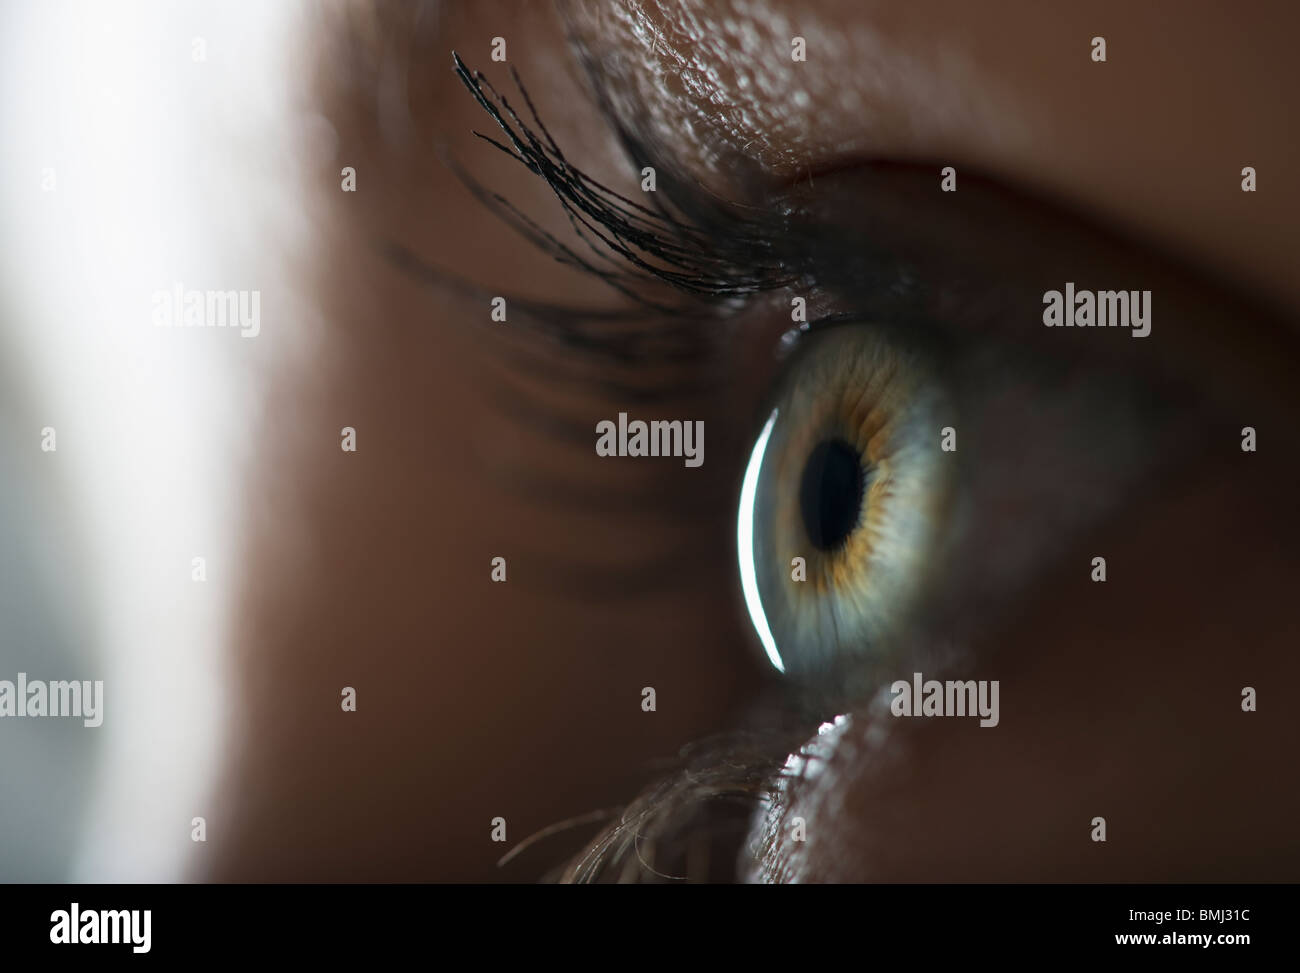 Woman's eye Stock Photo